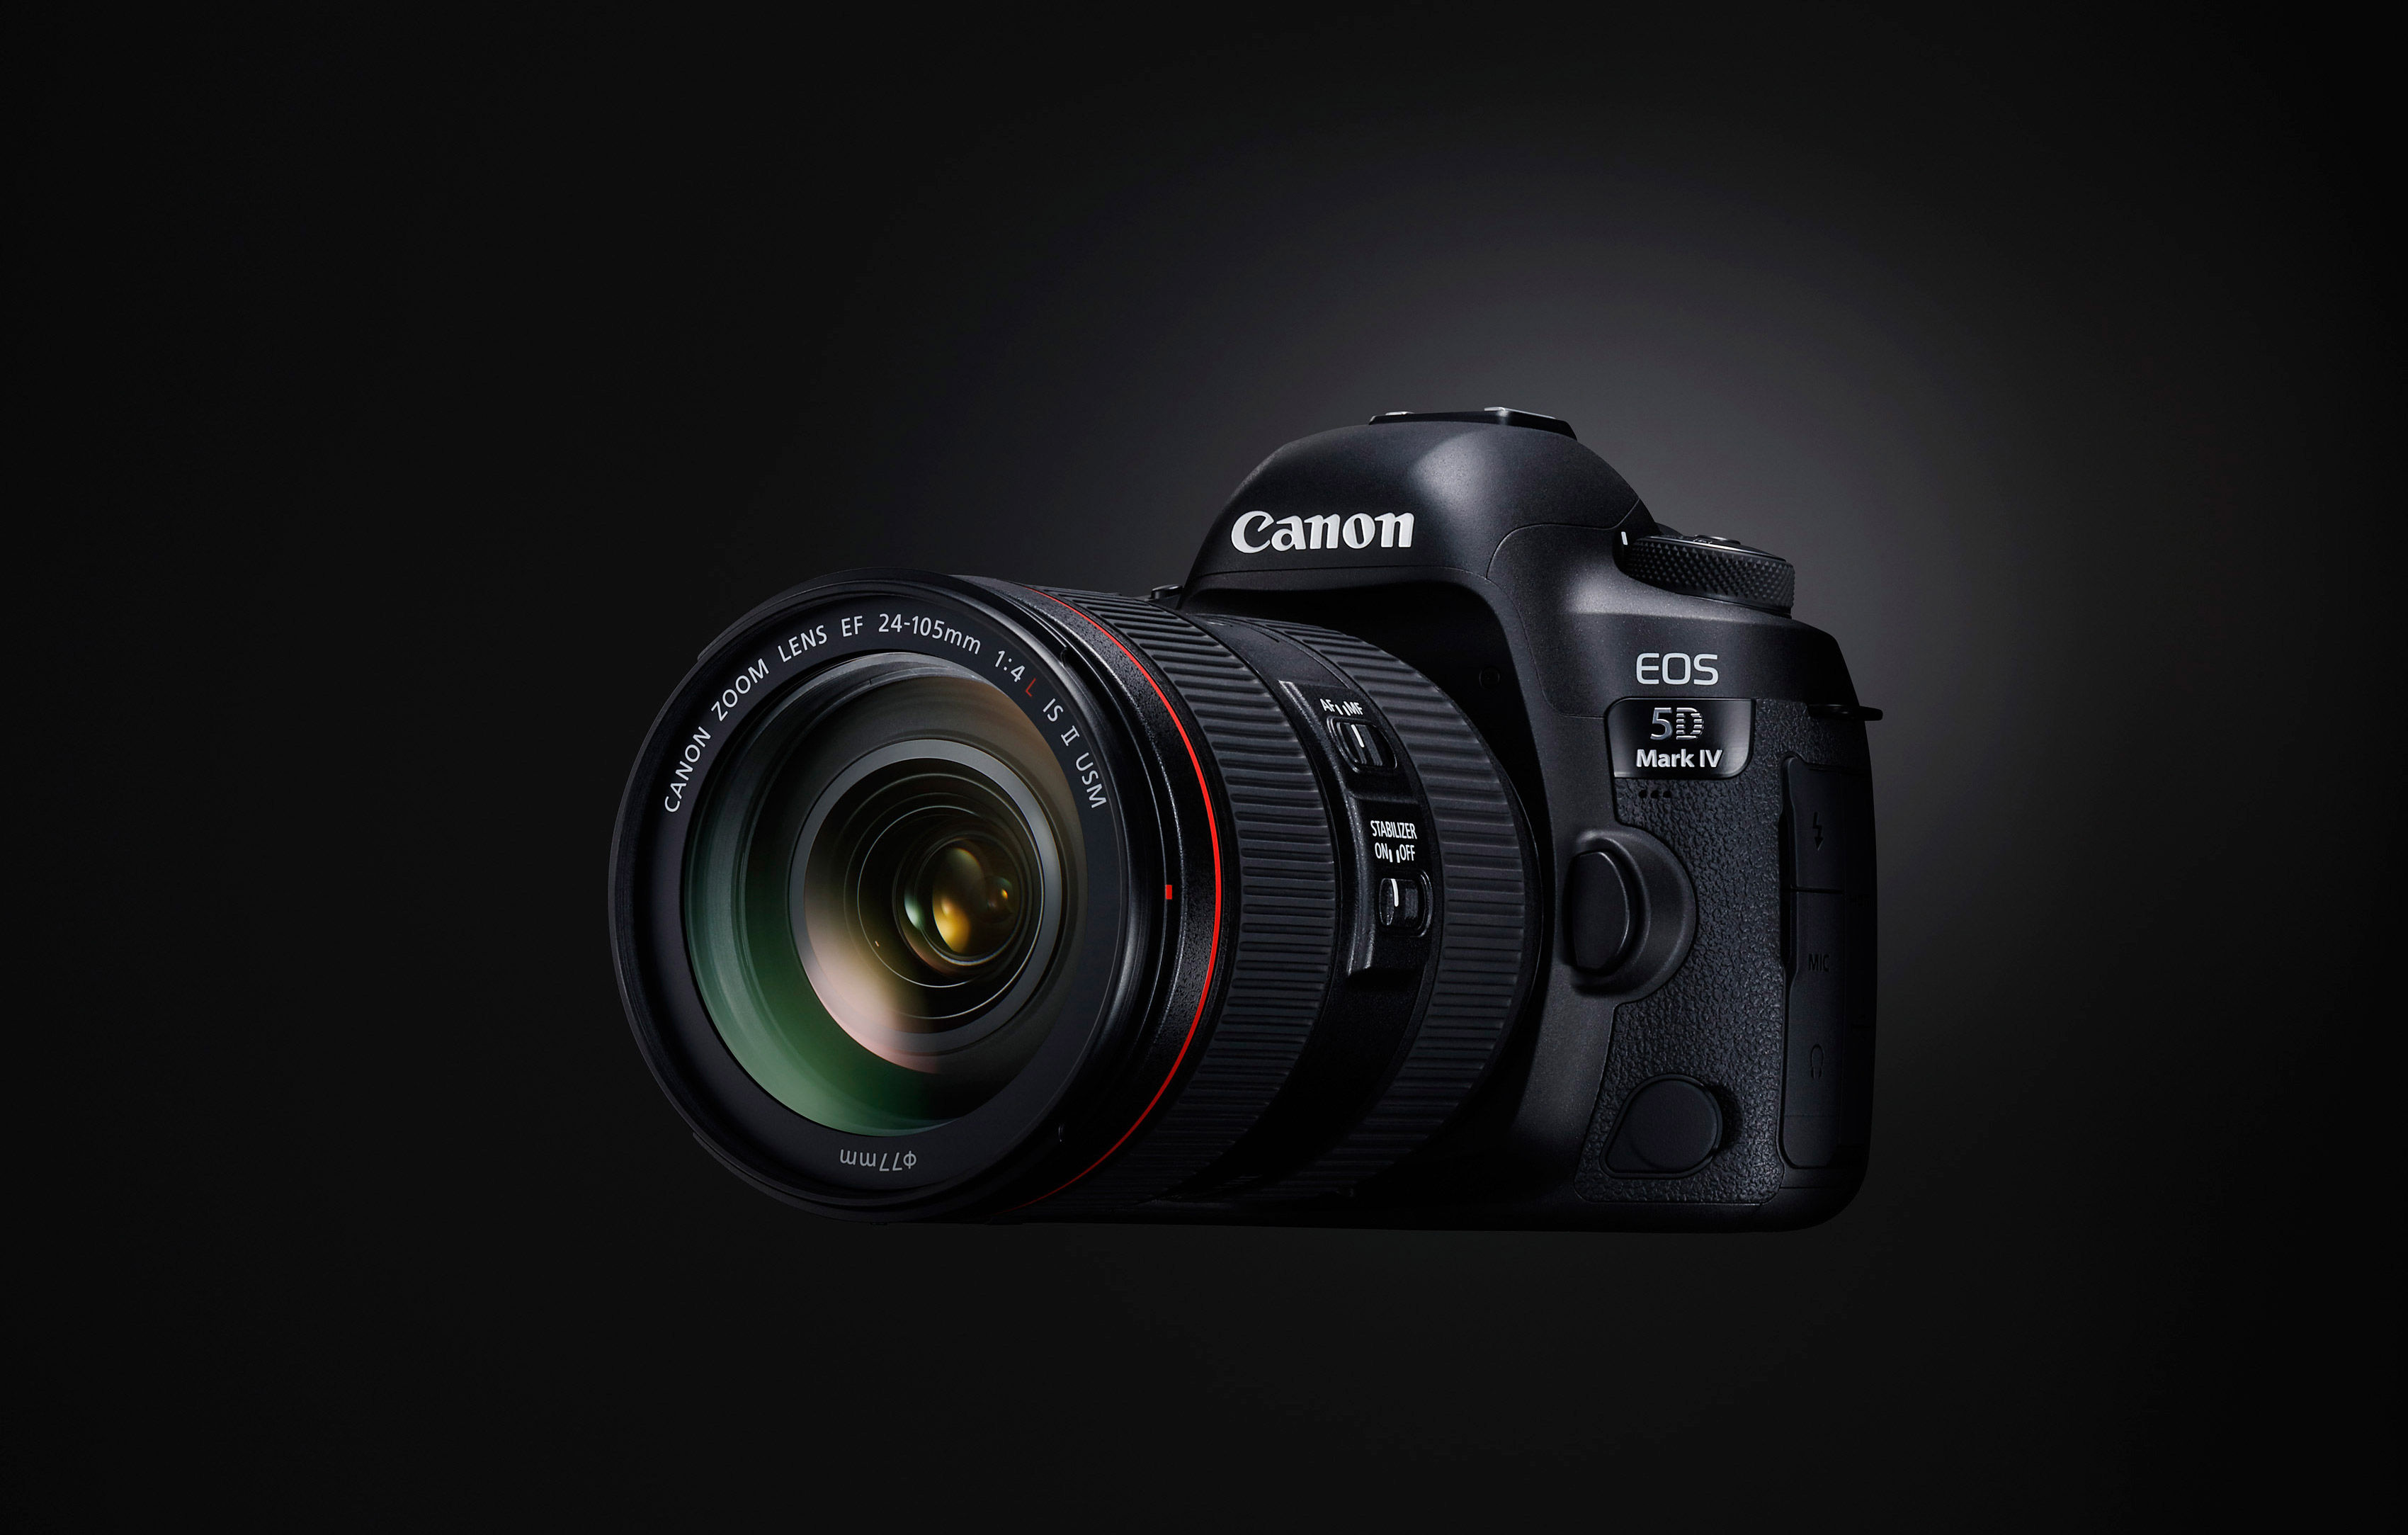 Canon EOS 5D Mark IV DSLR Body 1483C003 DSLR Cameras - Vistek